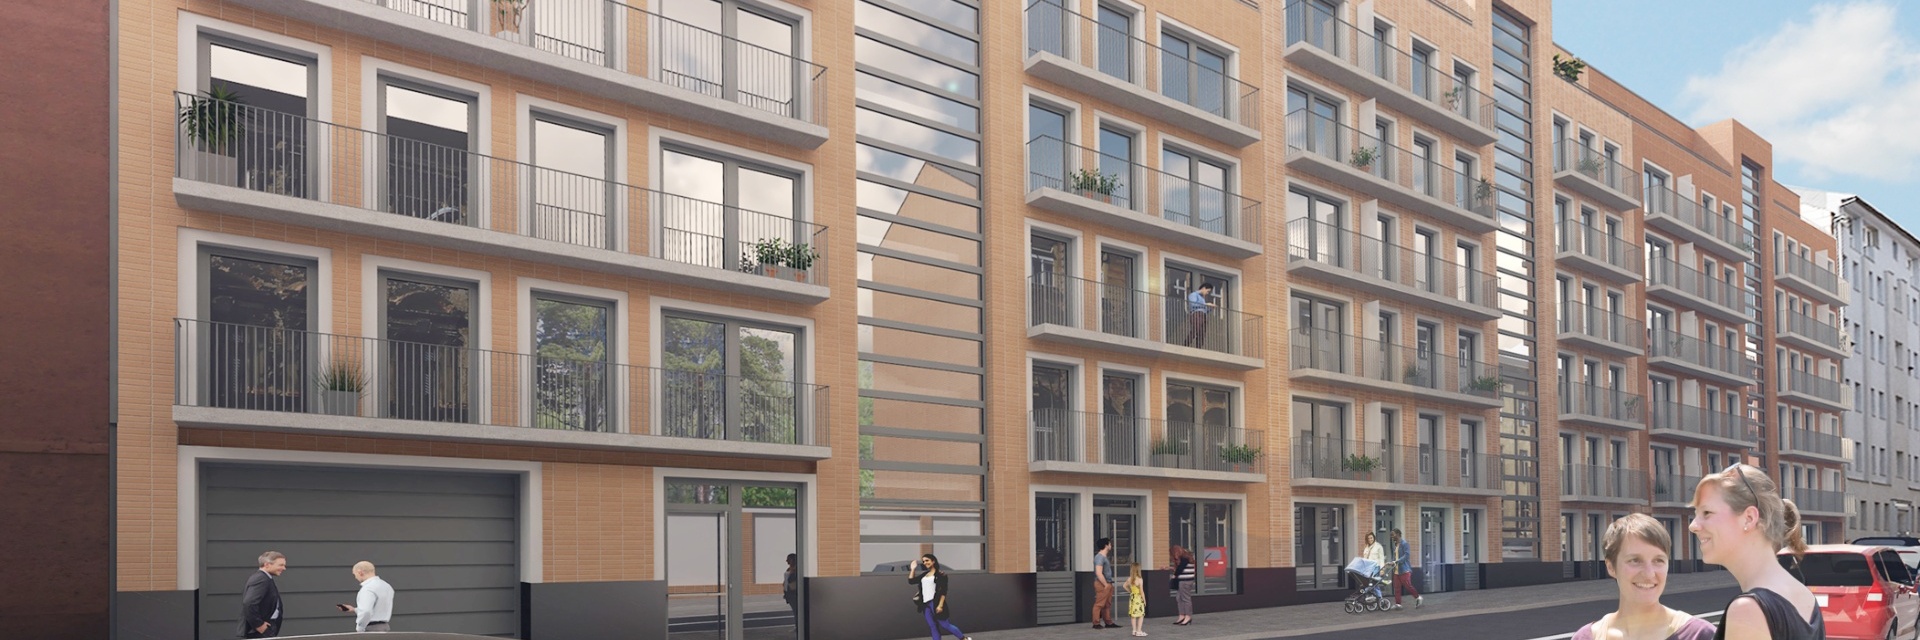 Prodej moderního bytu 3+kk s balkonem a terasou Bytový dům Lido II